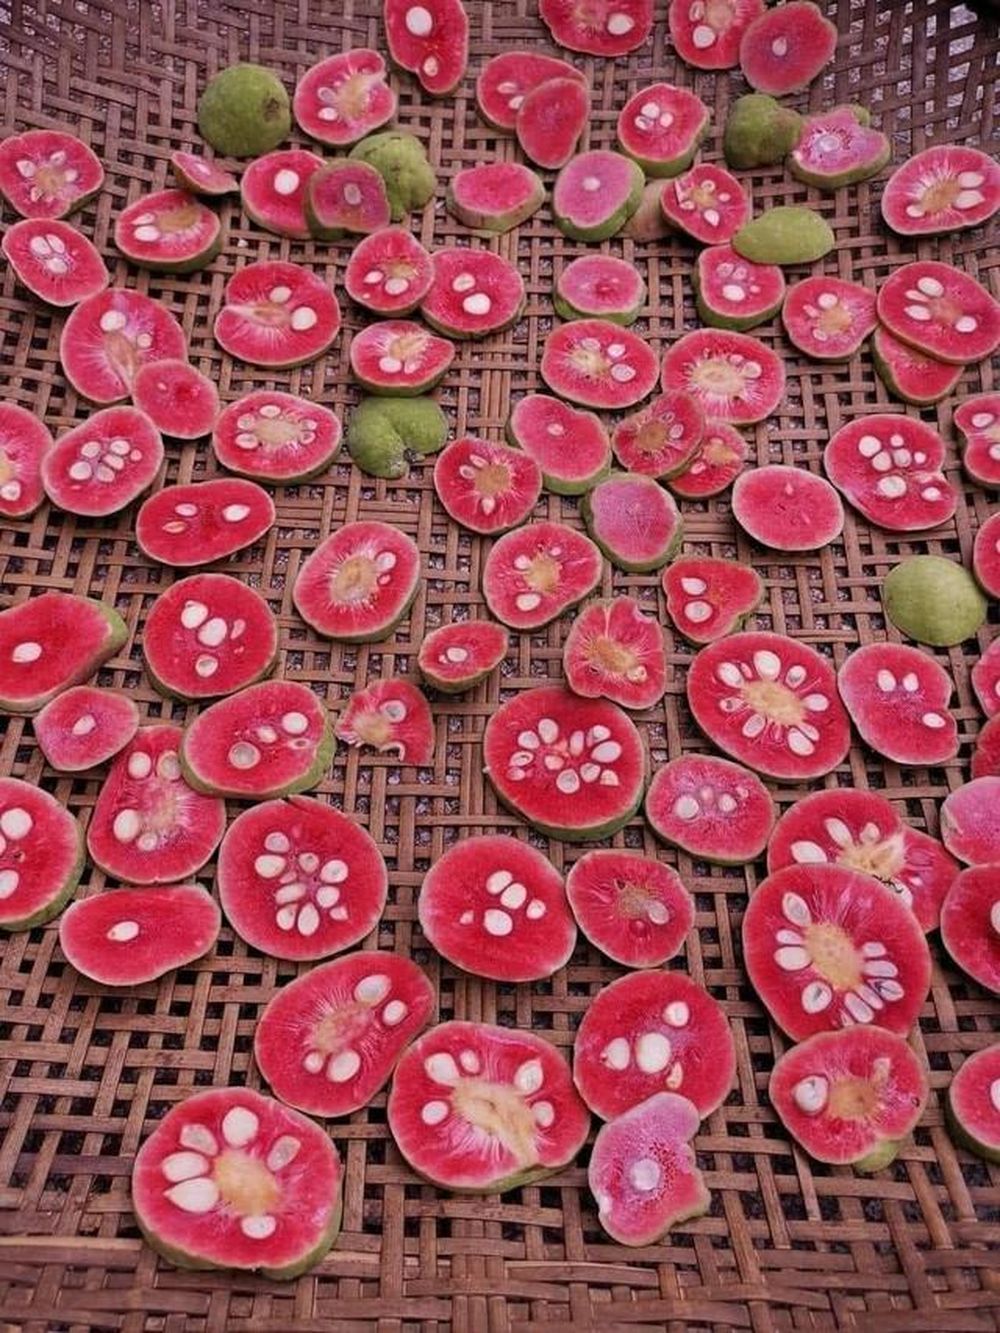 Một loại quả vị chua chua, ruột hồng bắt mắt giá ngang trái cây nhập khẩu ở Hà Nội mà vẫn đắt khách - Ảnh 2.